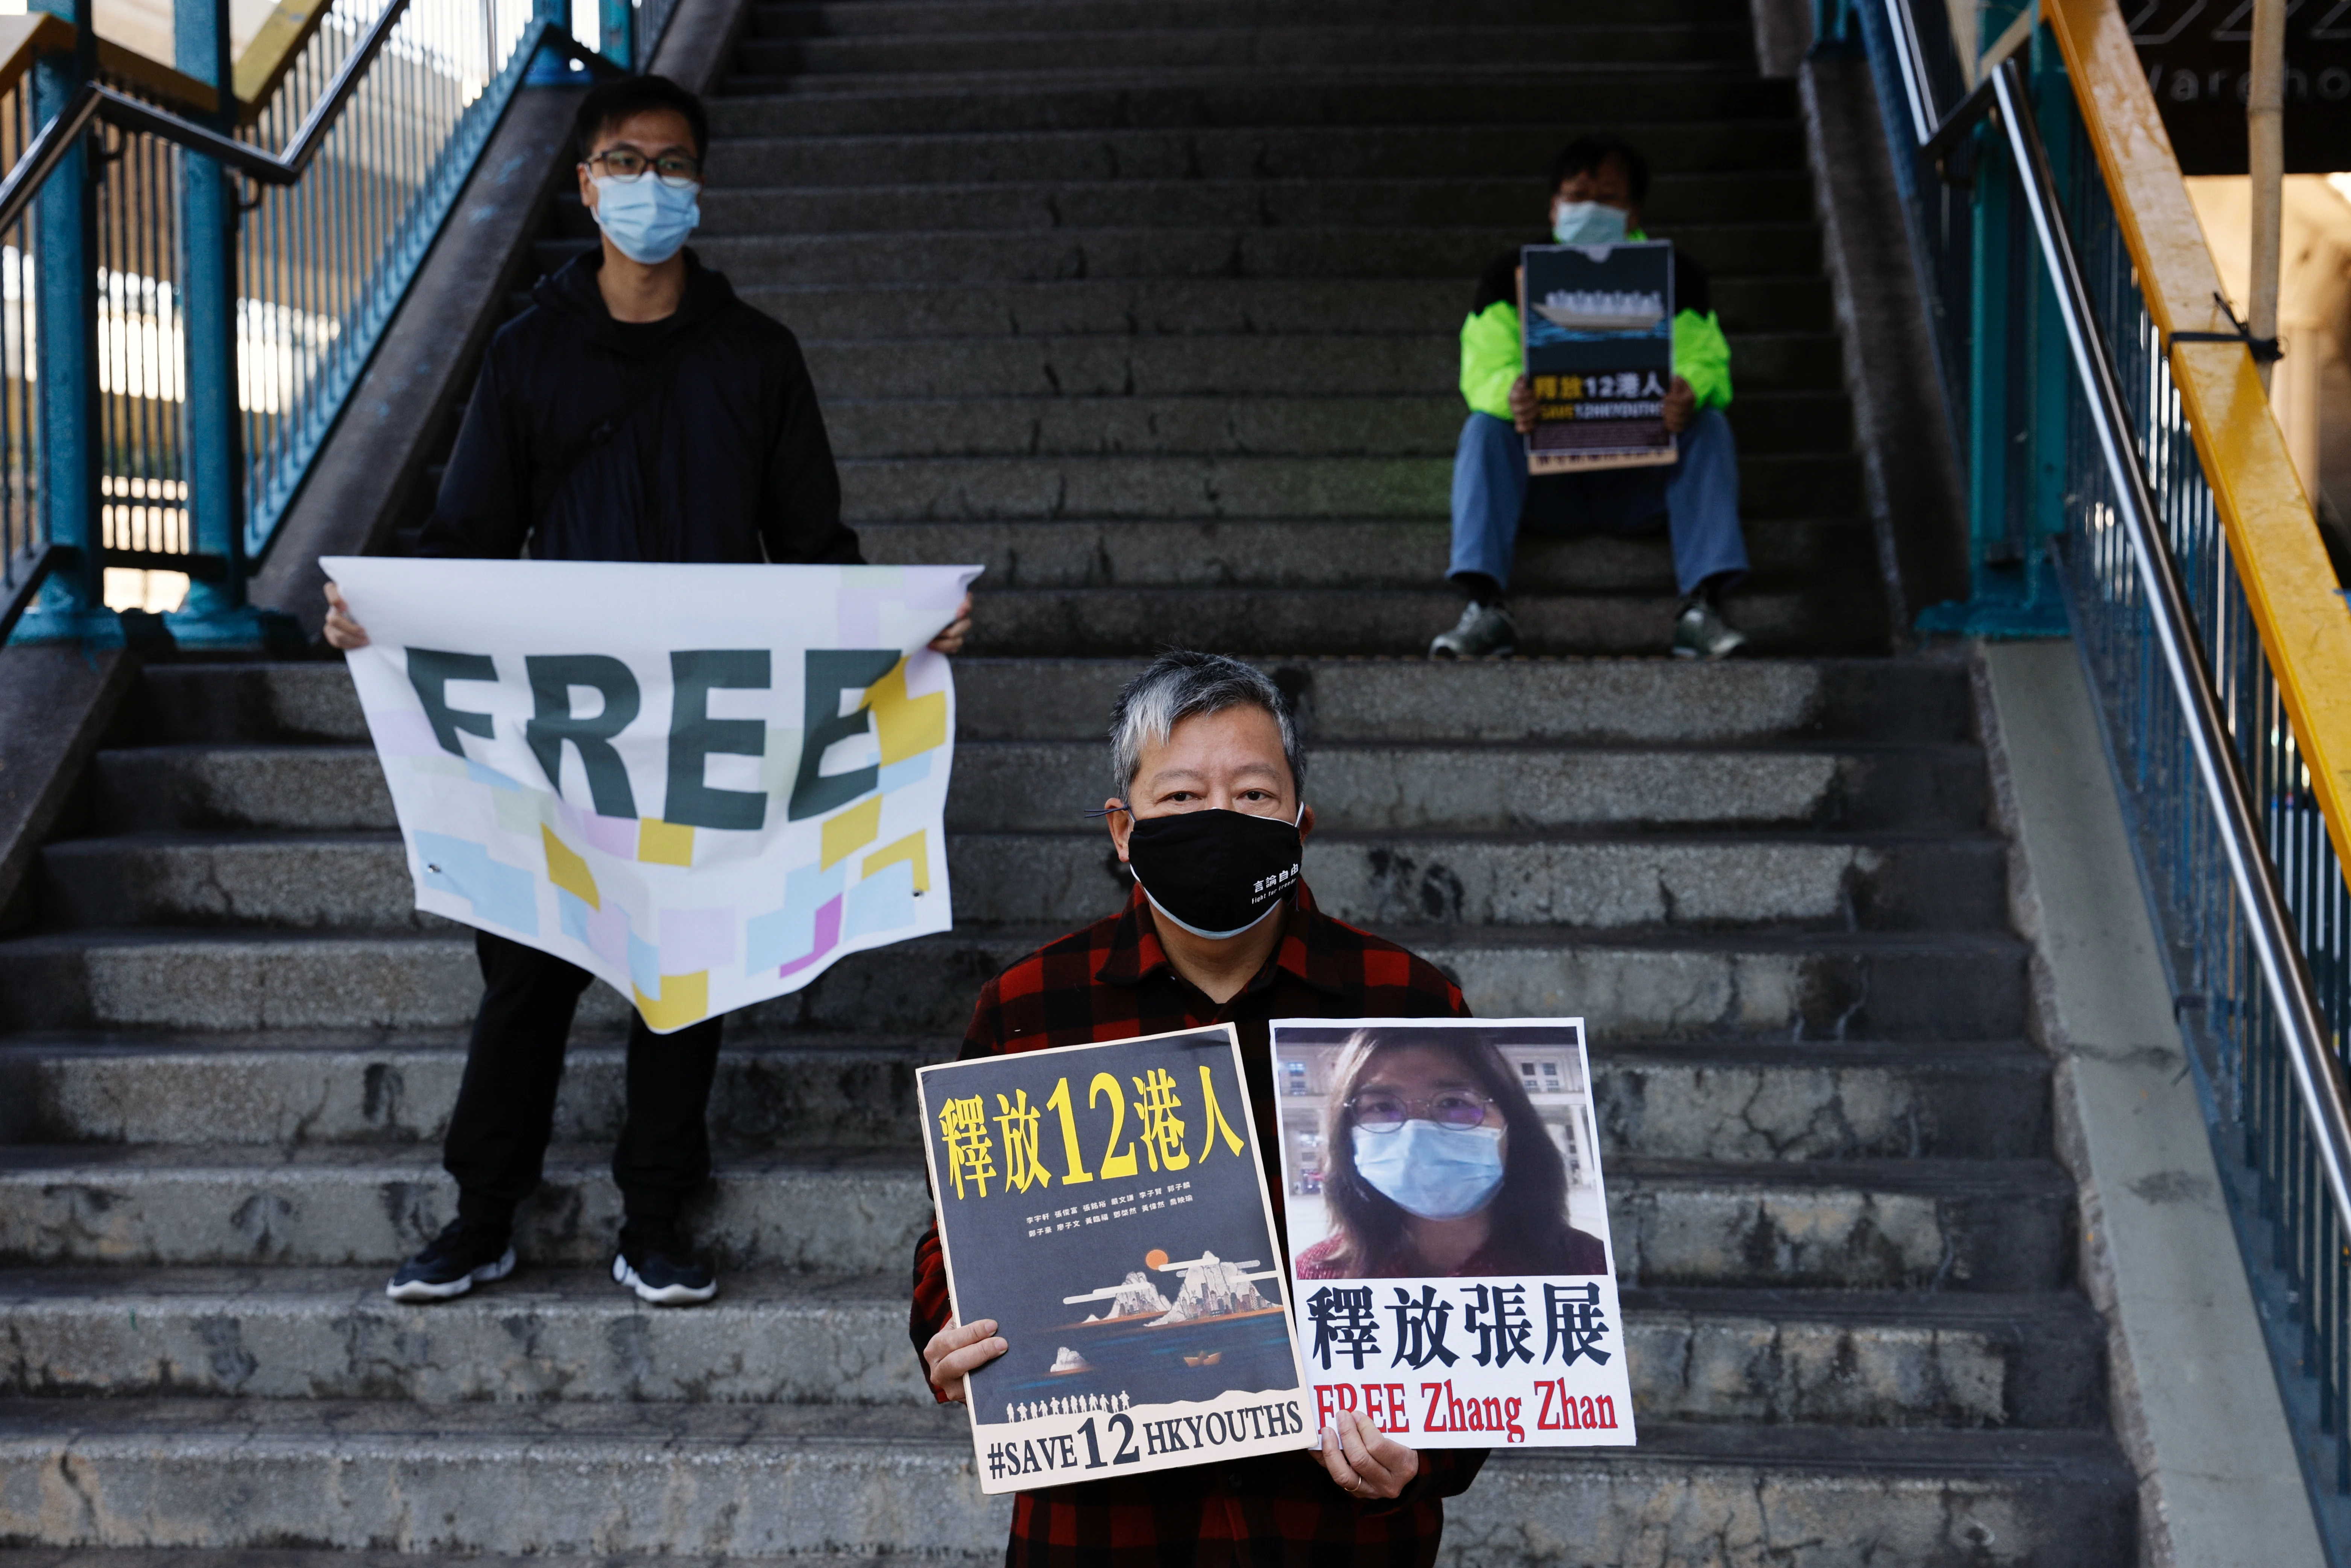 הפגנה בהונג קונג למען שחרורה של ז'אנג יחד עם פעילים נוספים